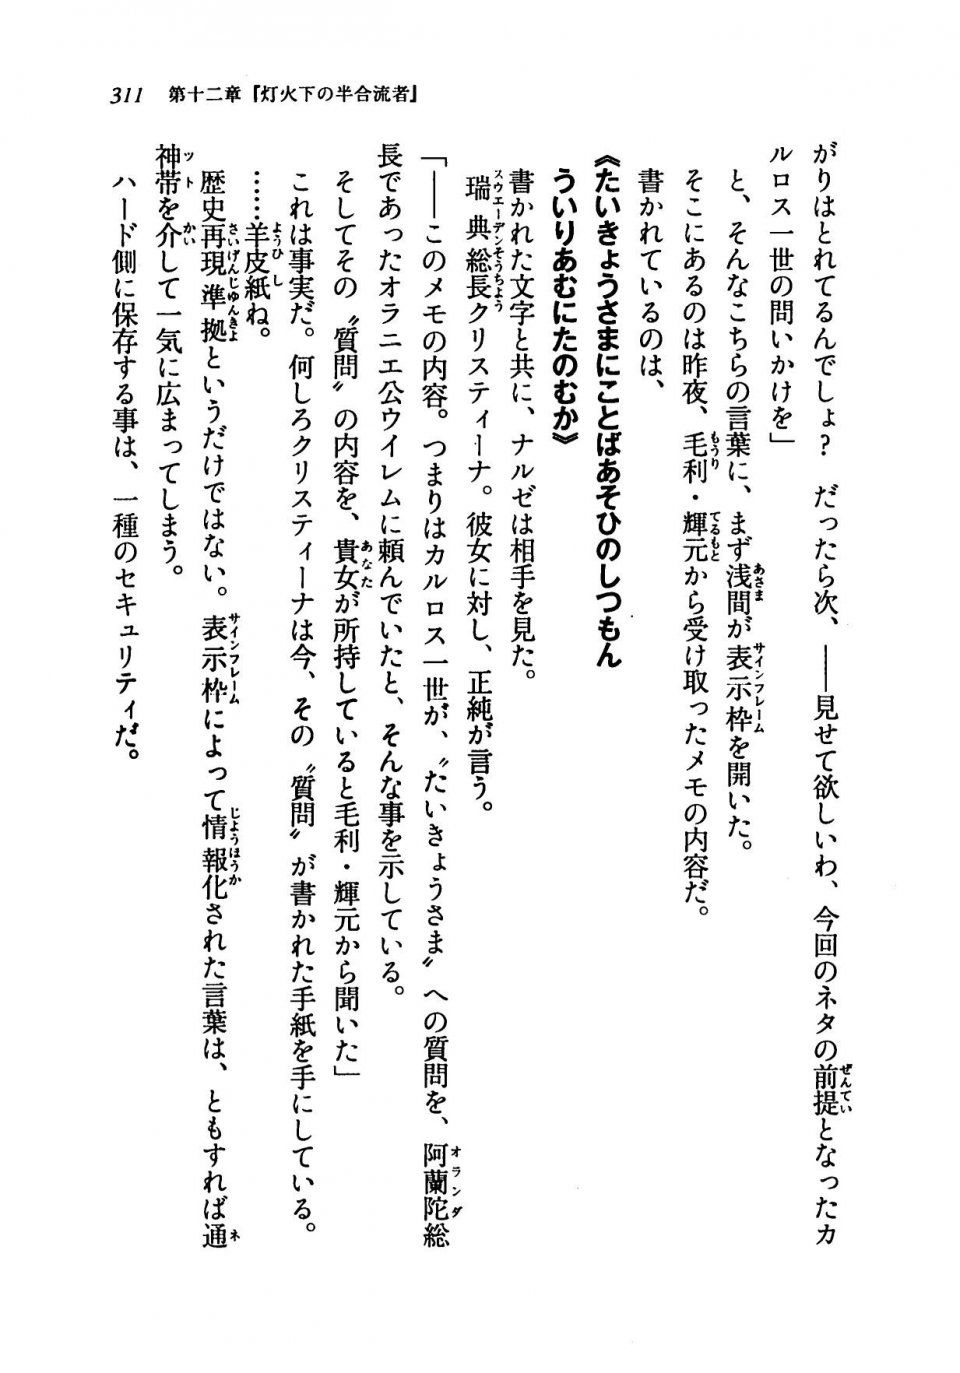 Kyoukai Senjou no Horizon LN Vol 19(8A) - Photo #311